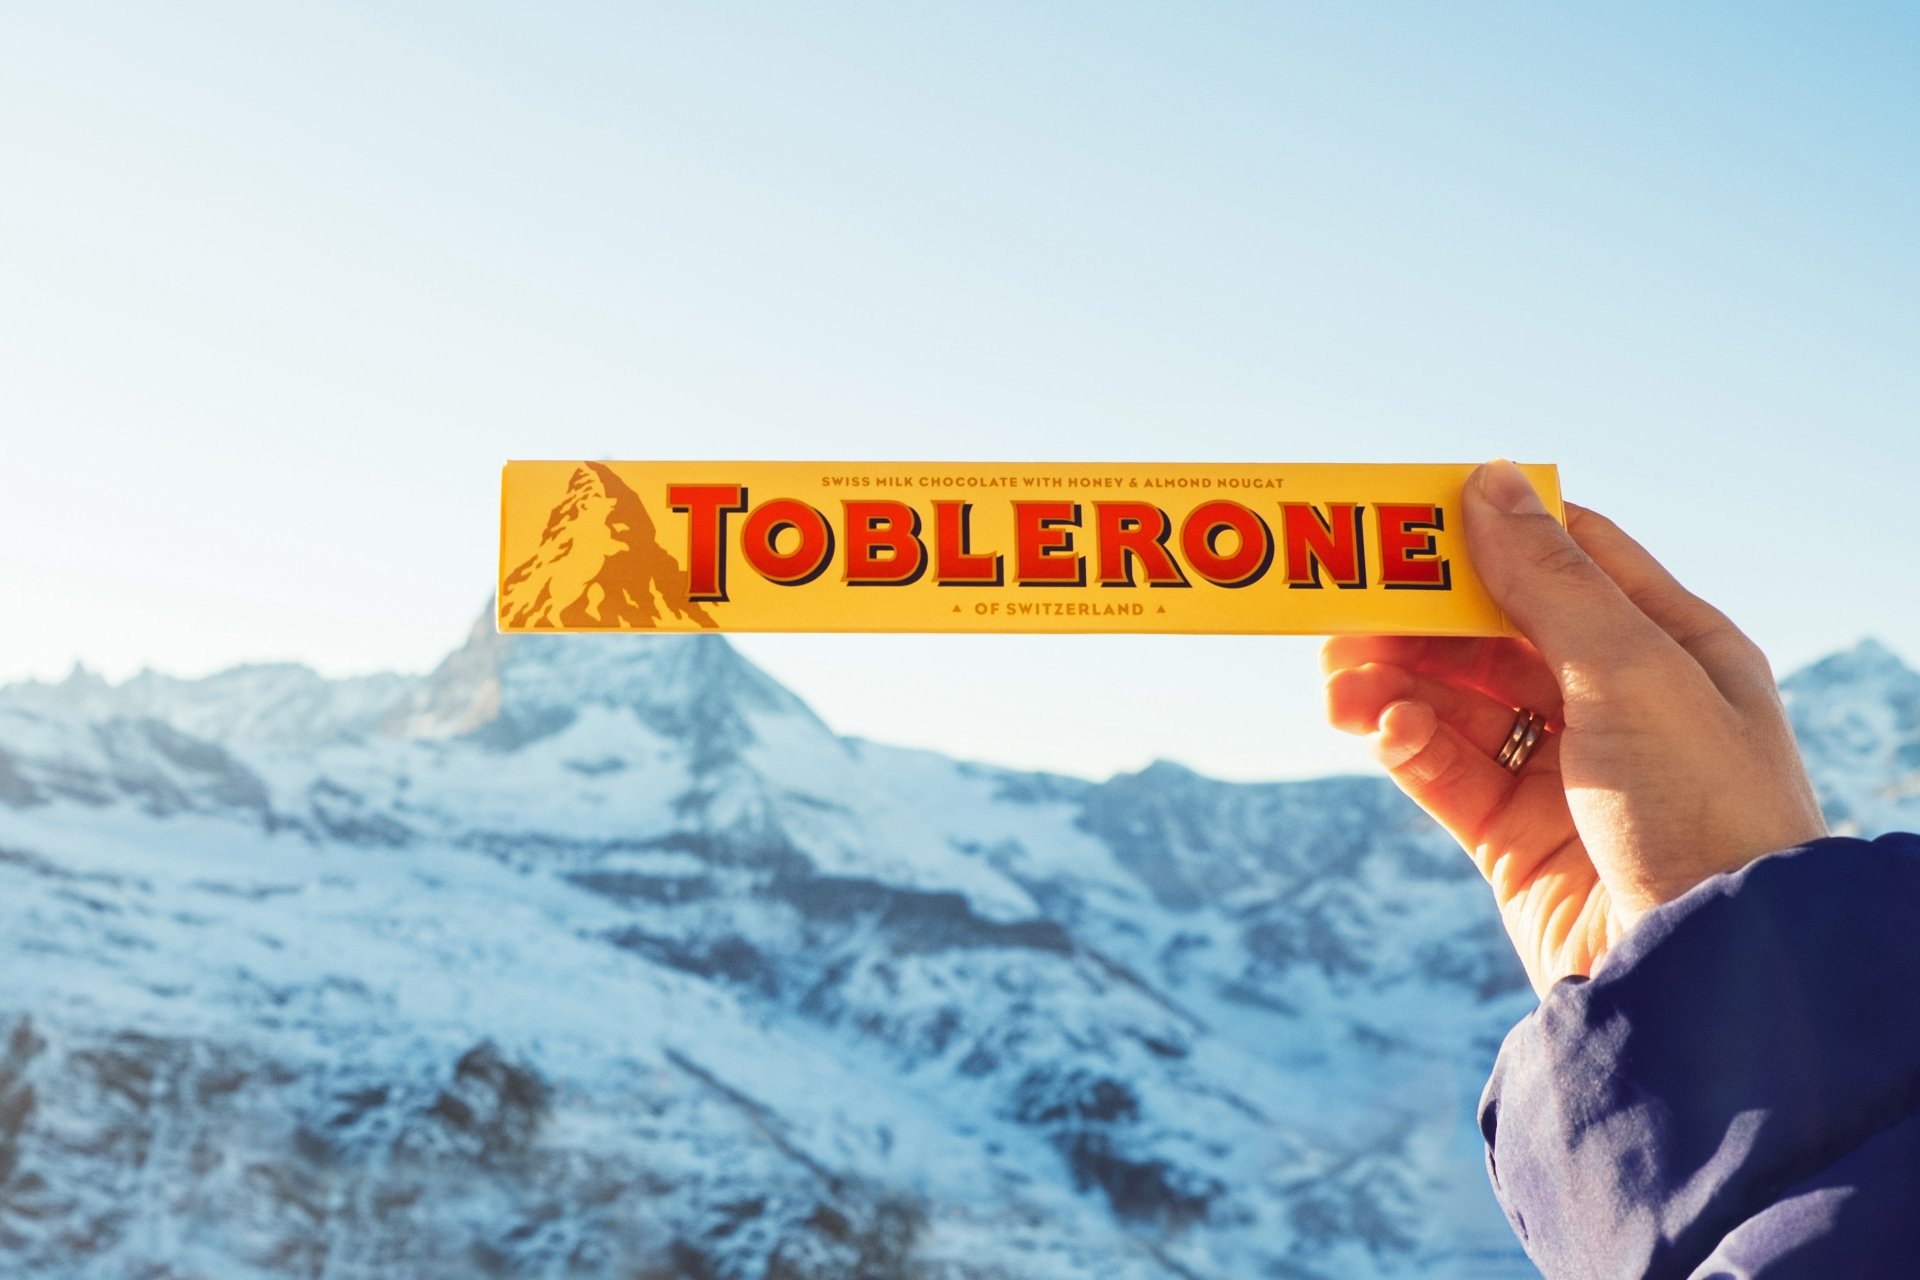  Ciocolata Toblerone este obligată să-și schimbe ambalajul. Dispare vestitul vârf muntos Matterhorn